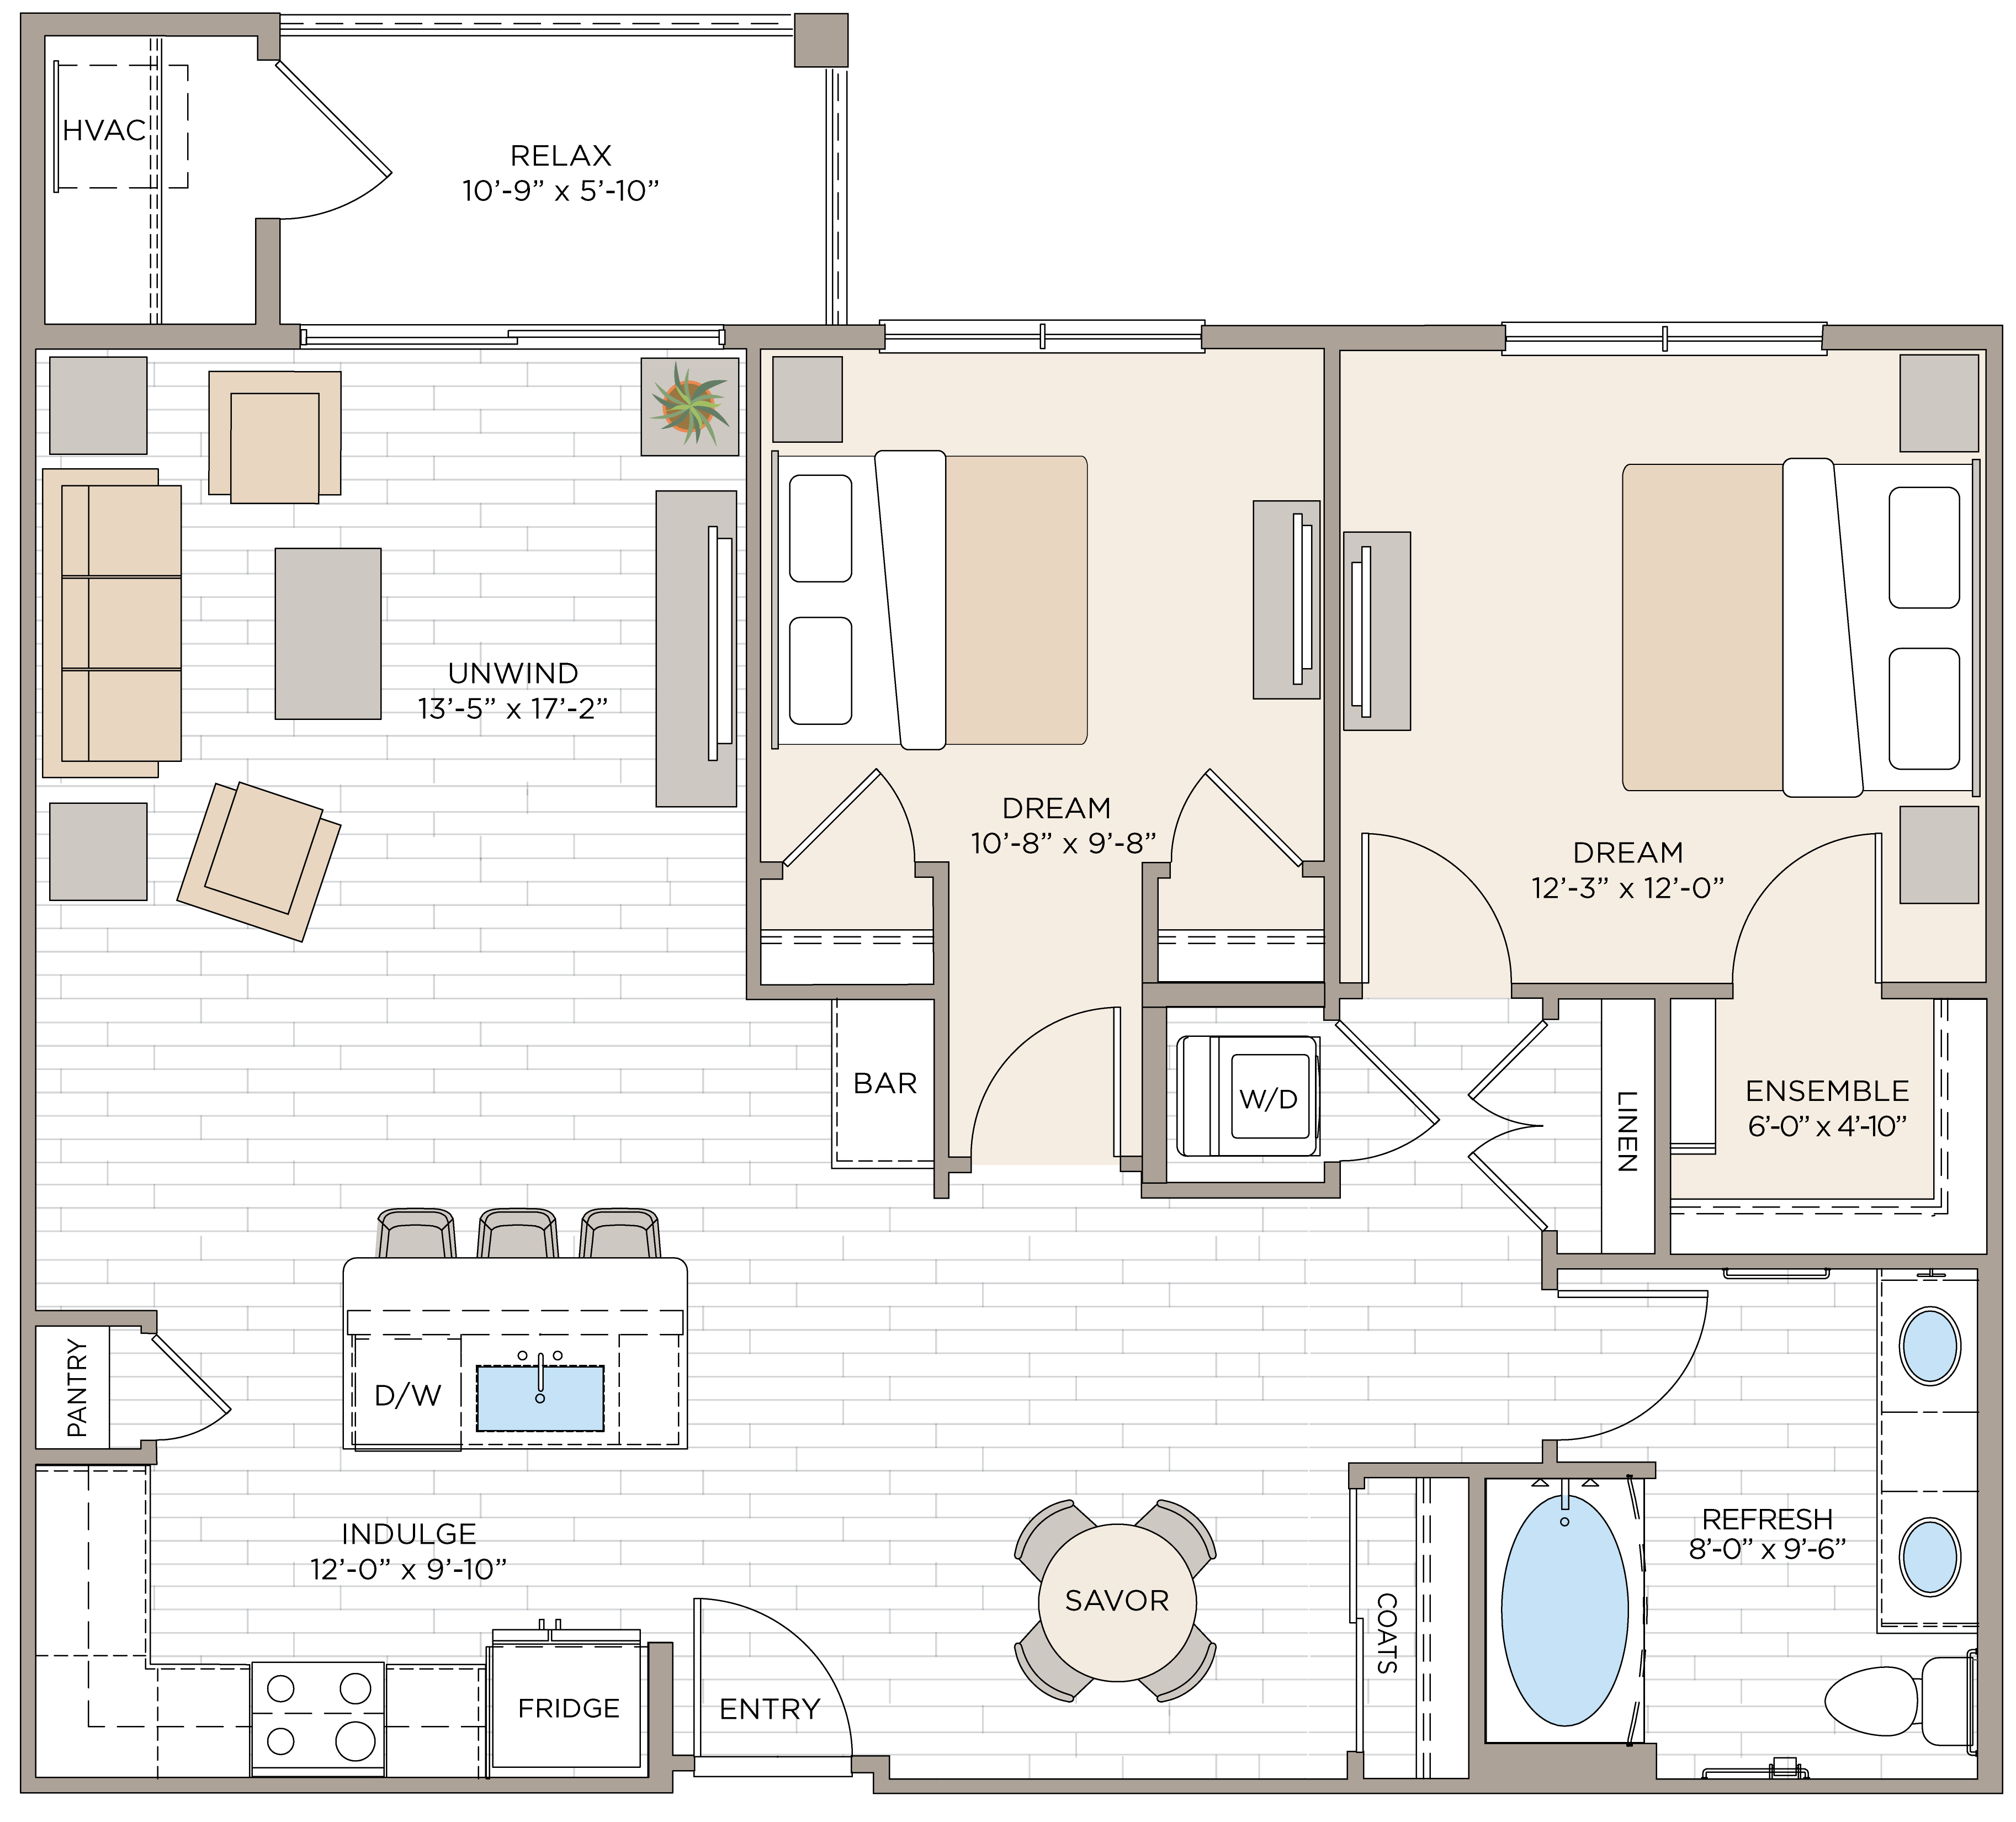 Floorplan for Apartment #14124, 2 bedroom unit at Halstead Maynard Crossing